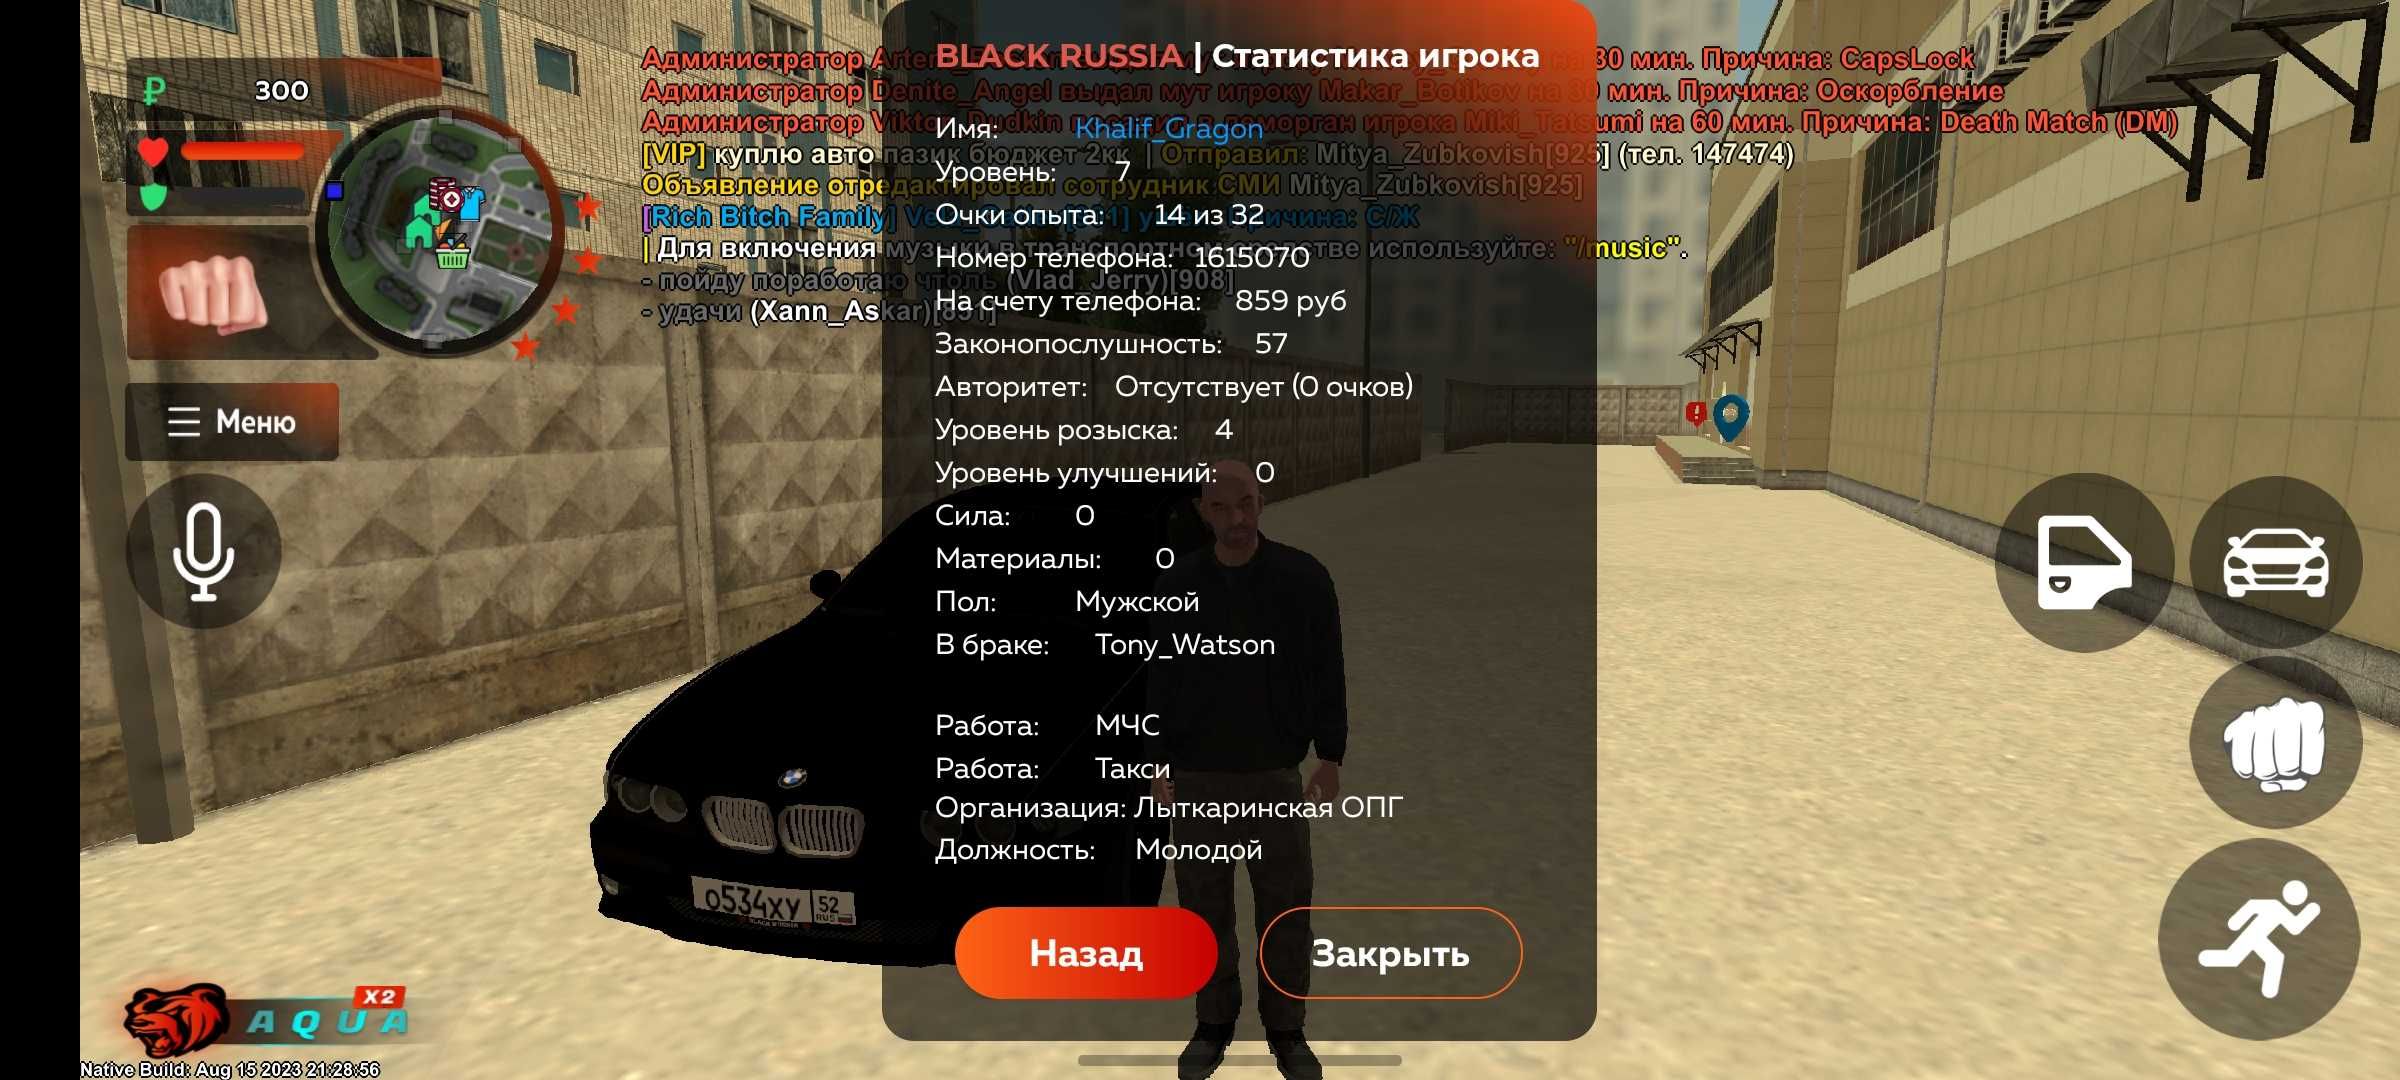 Black russia акк продаётся на минимальным цене.